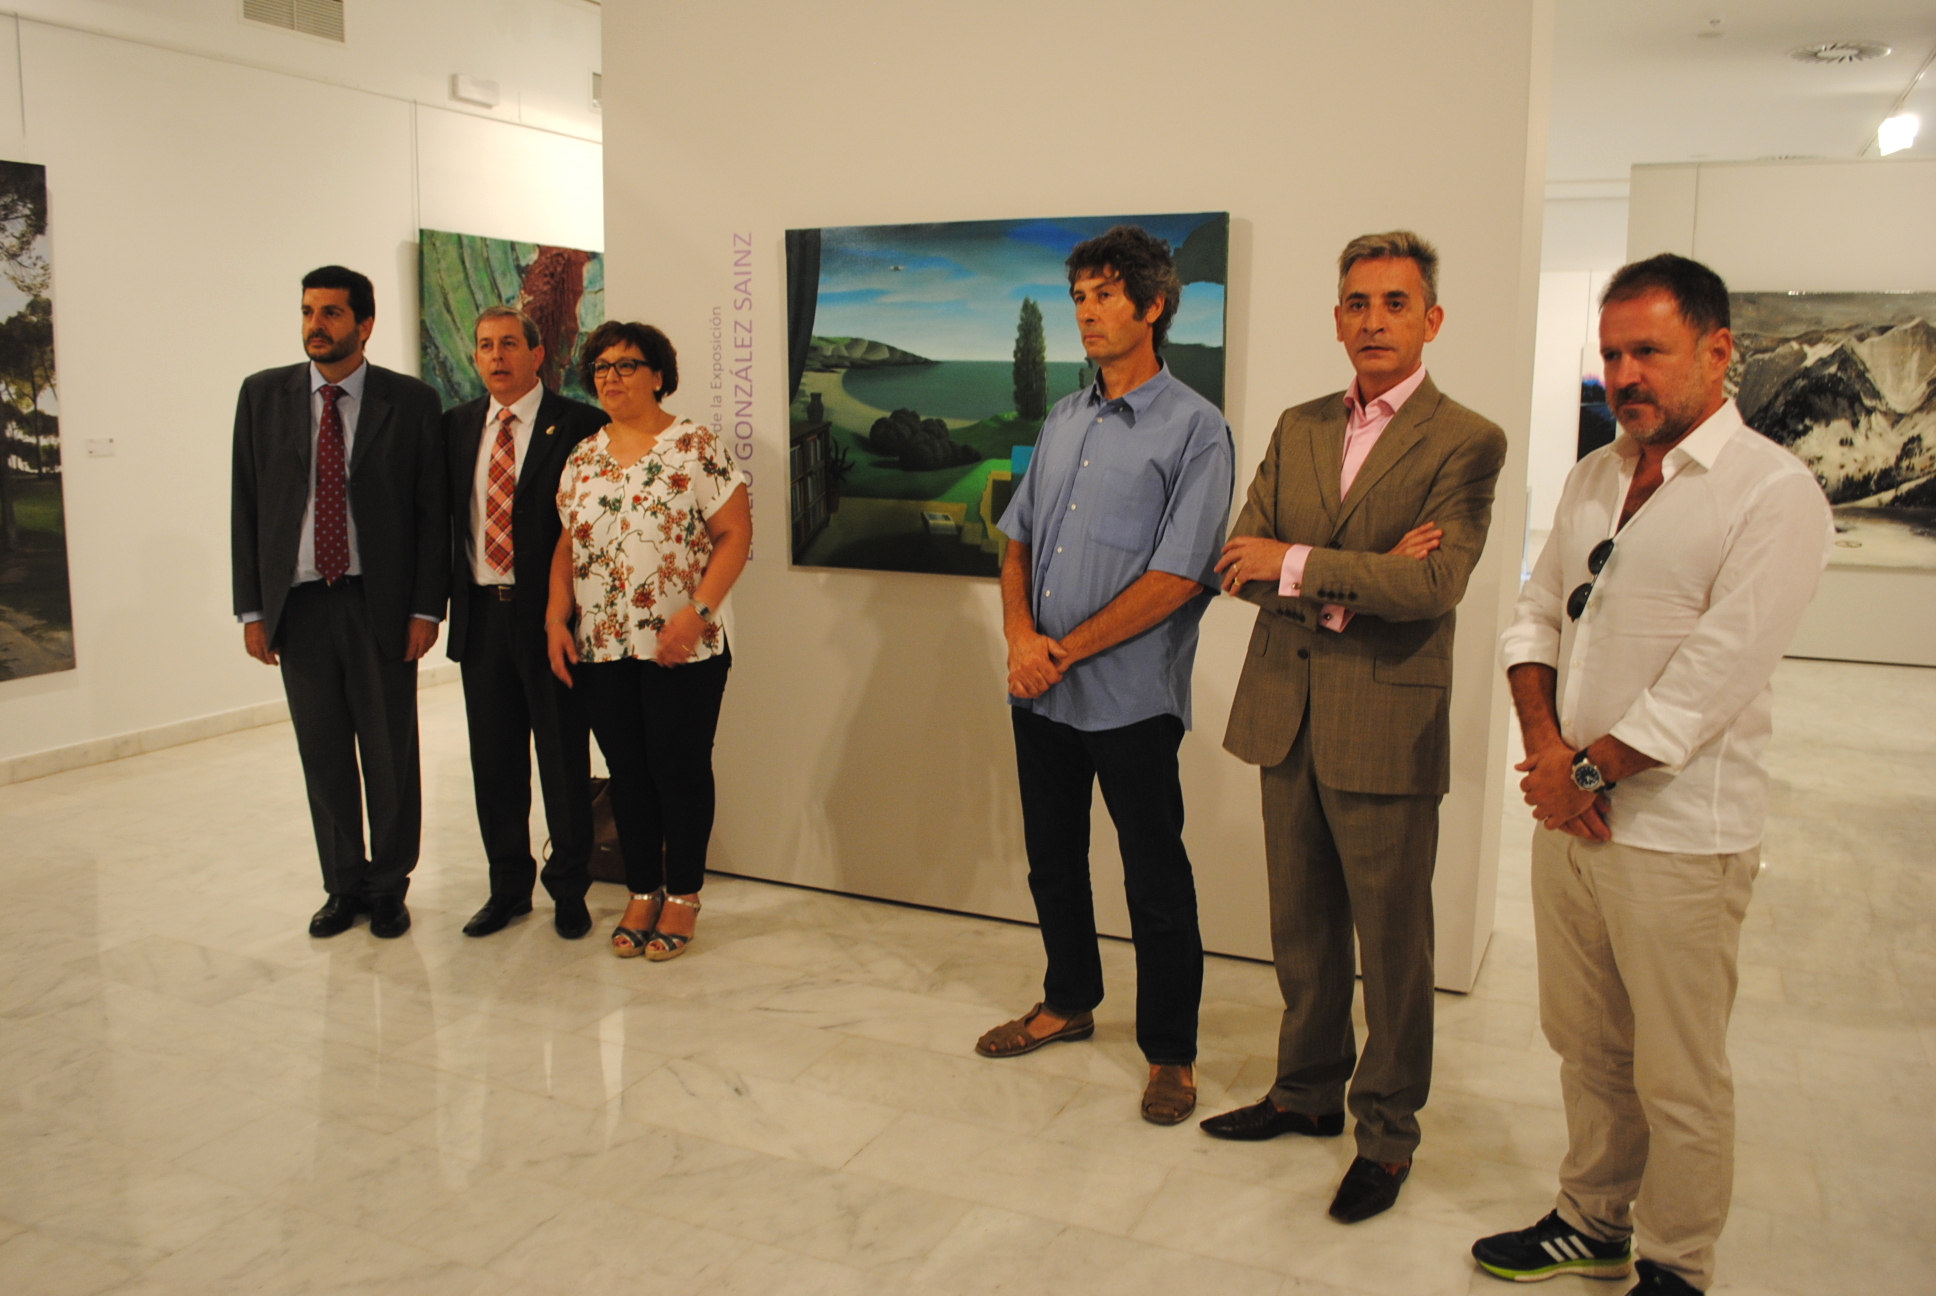 La 76 Exposición Internacional de Artes Plásticas de Valdepeñas abre sus puertas